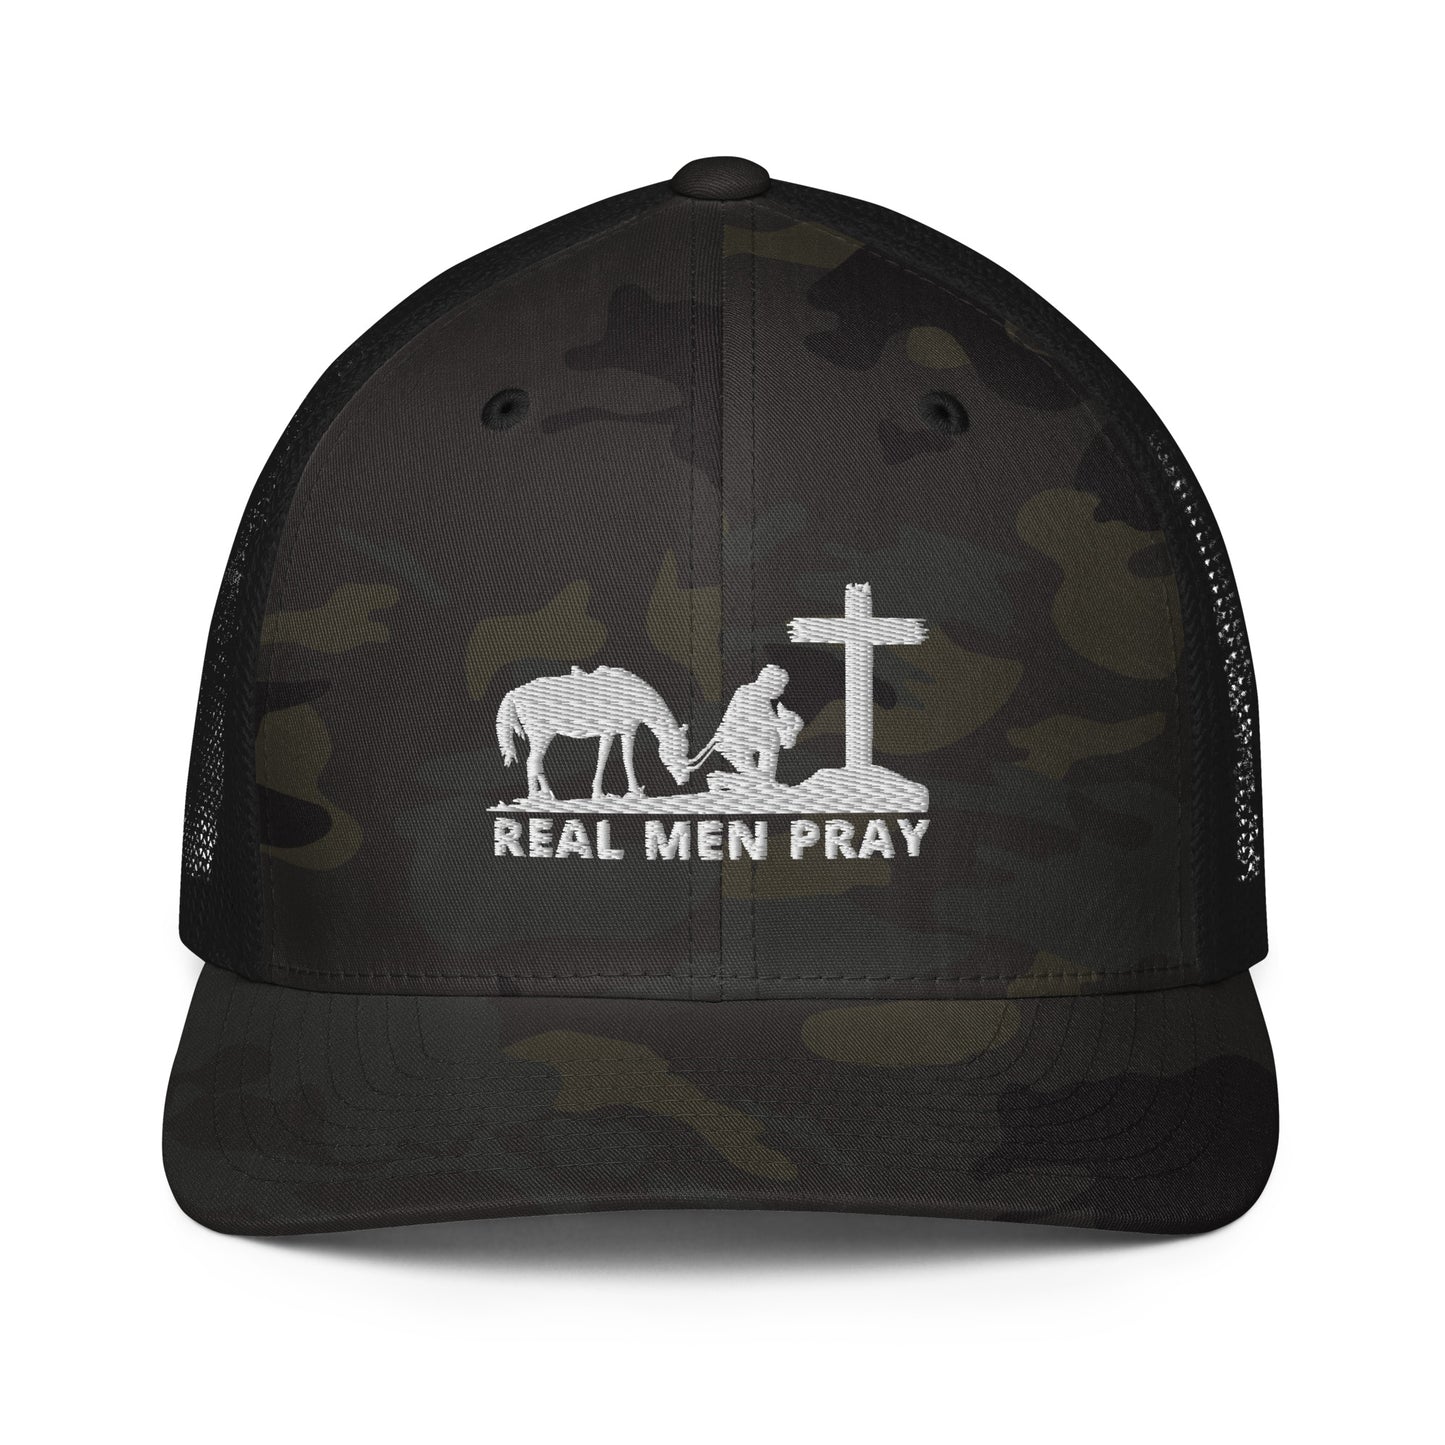 Real Men Pray - Closed-back trucker cap